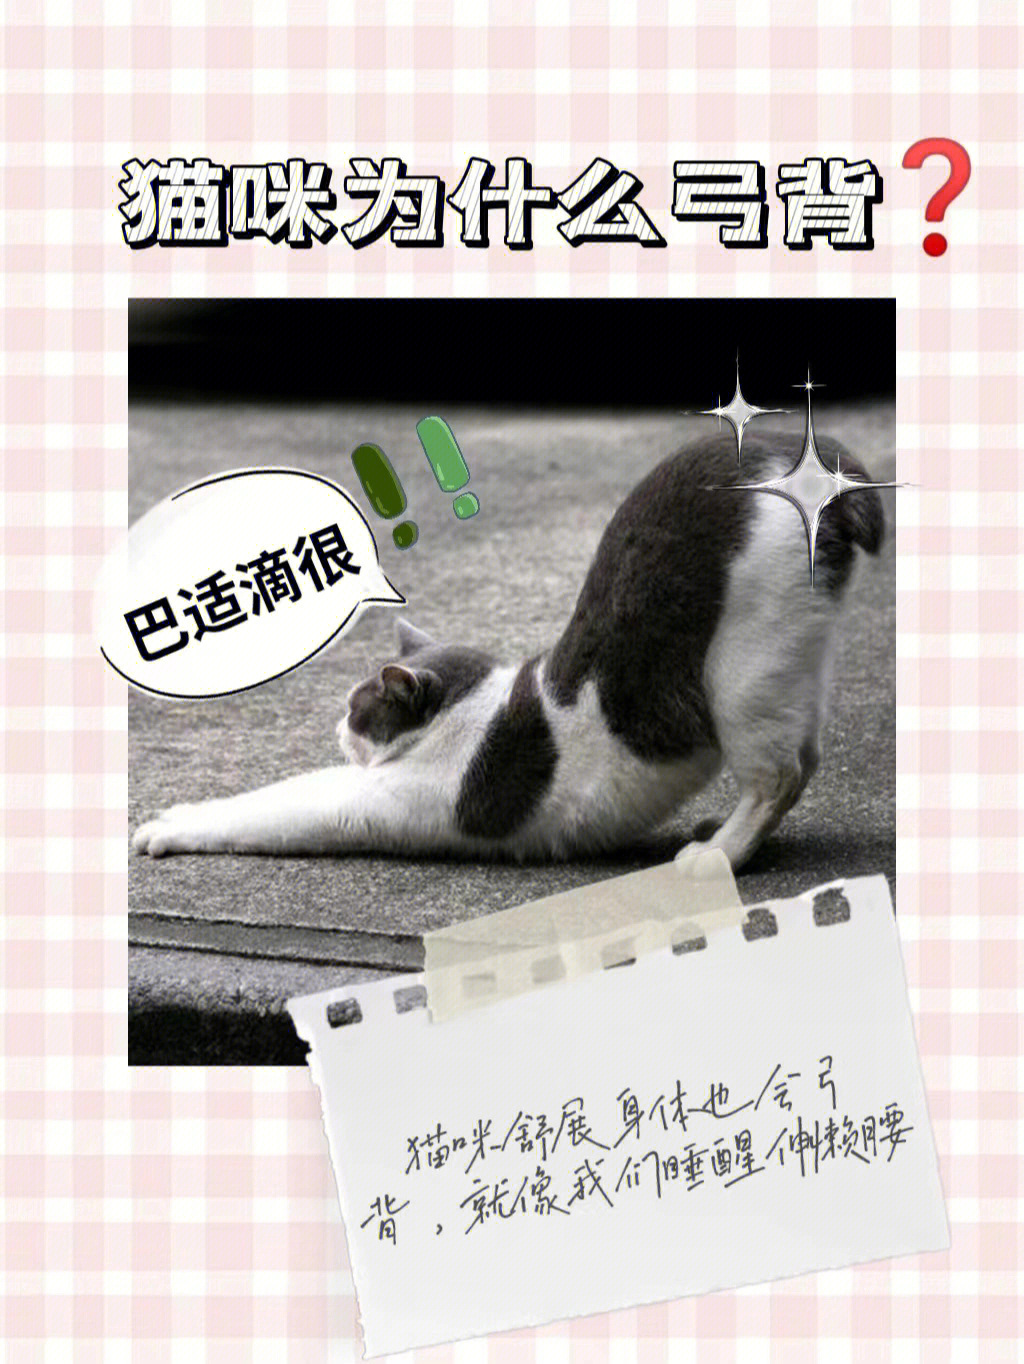 猫弓背卡通图片